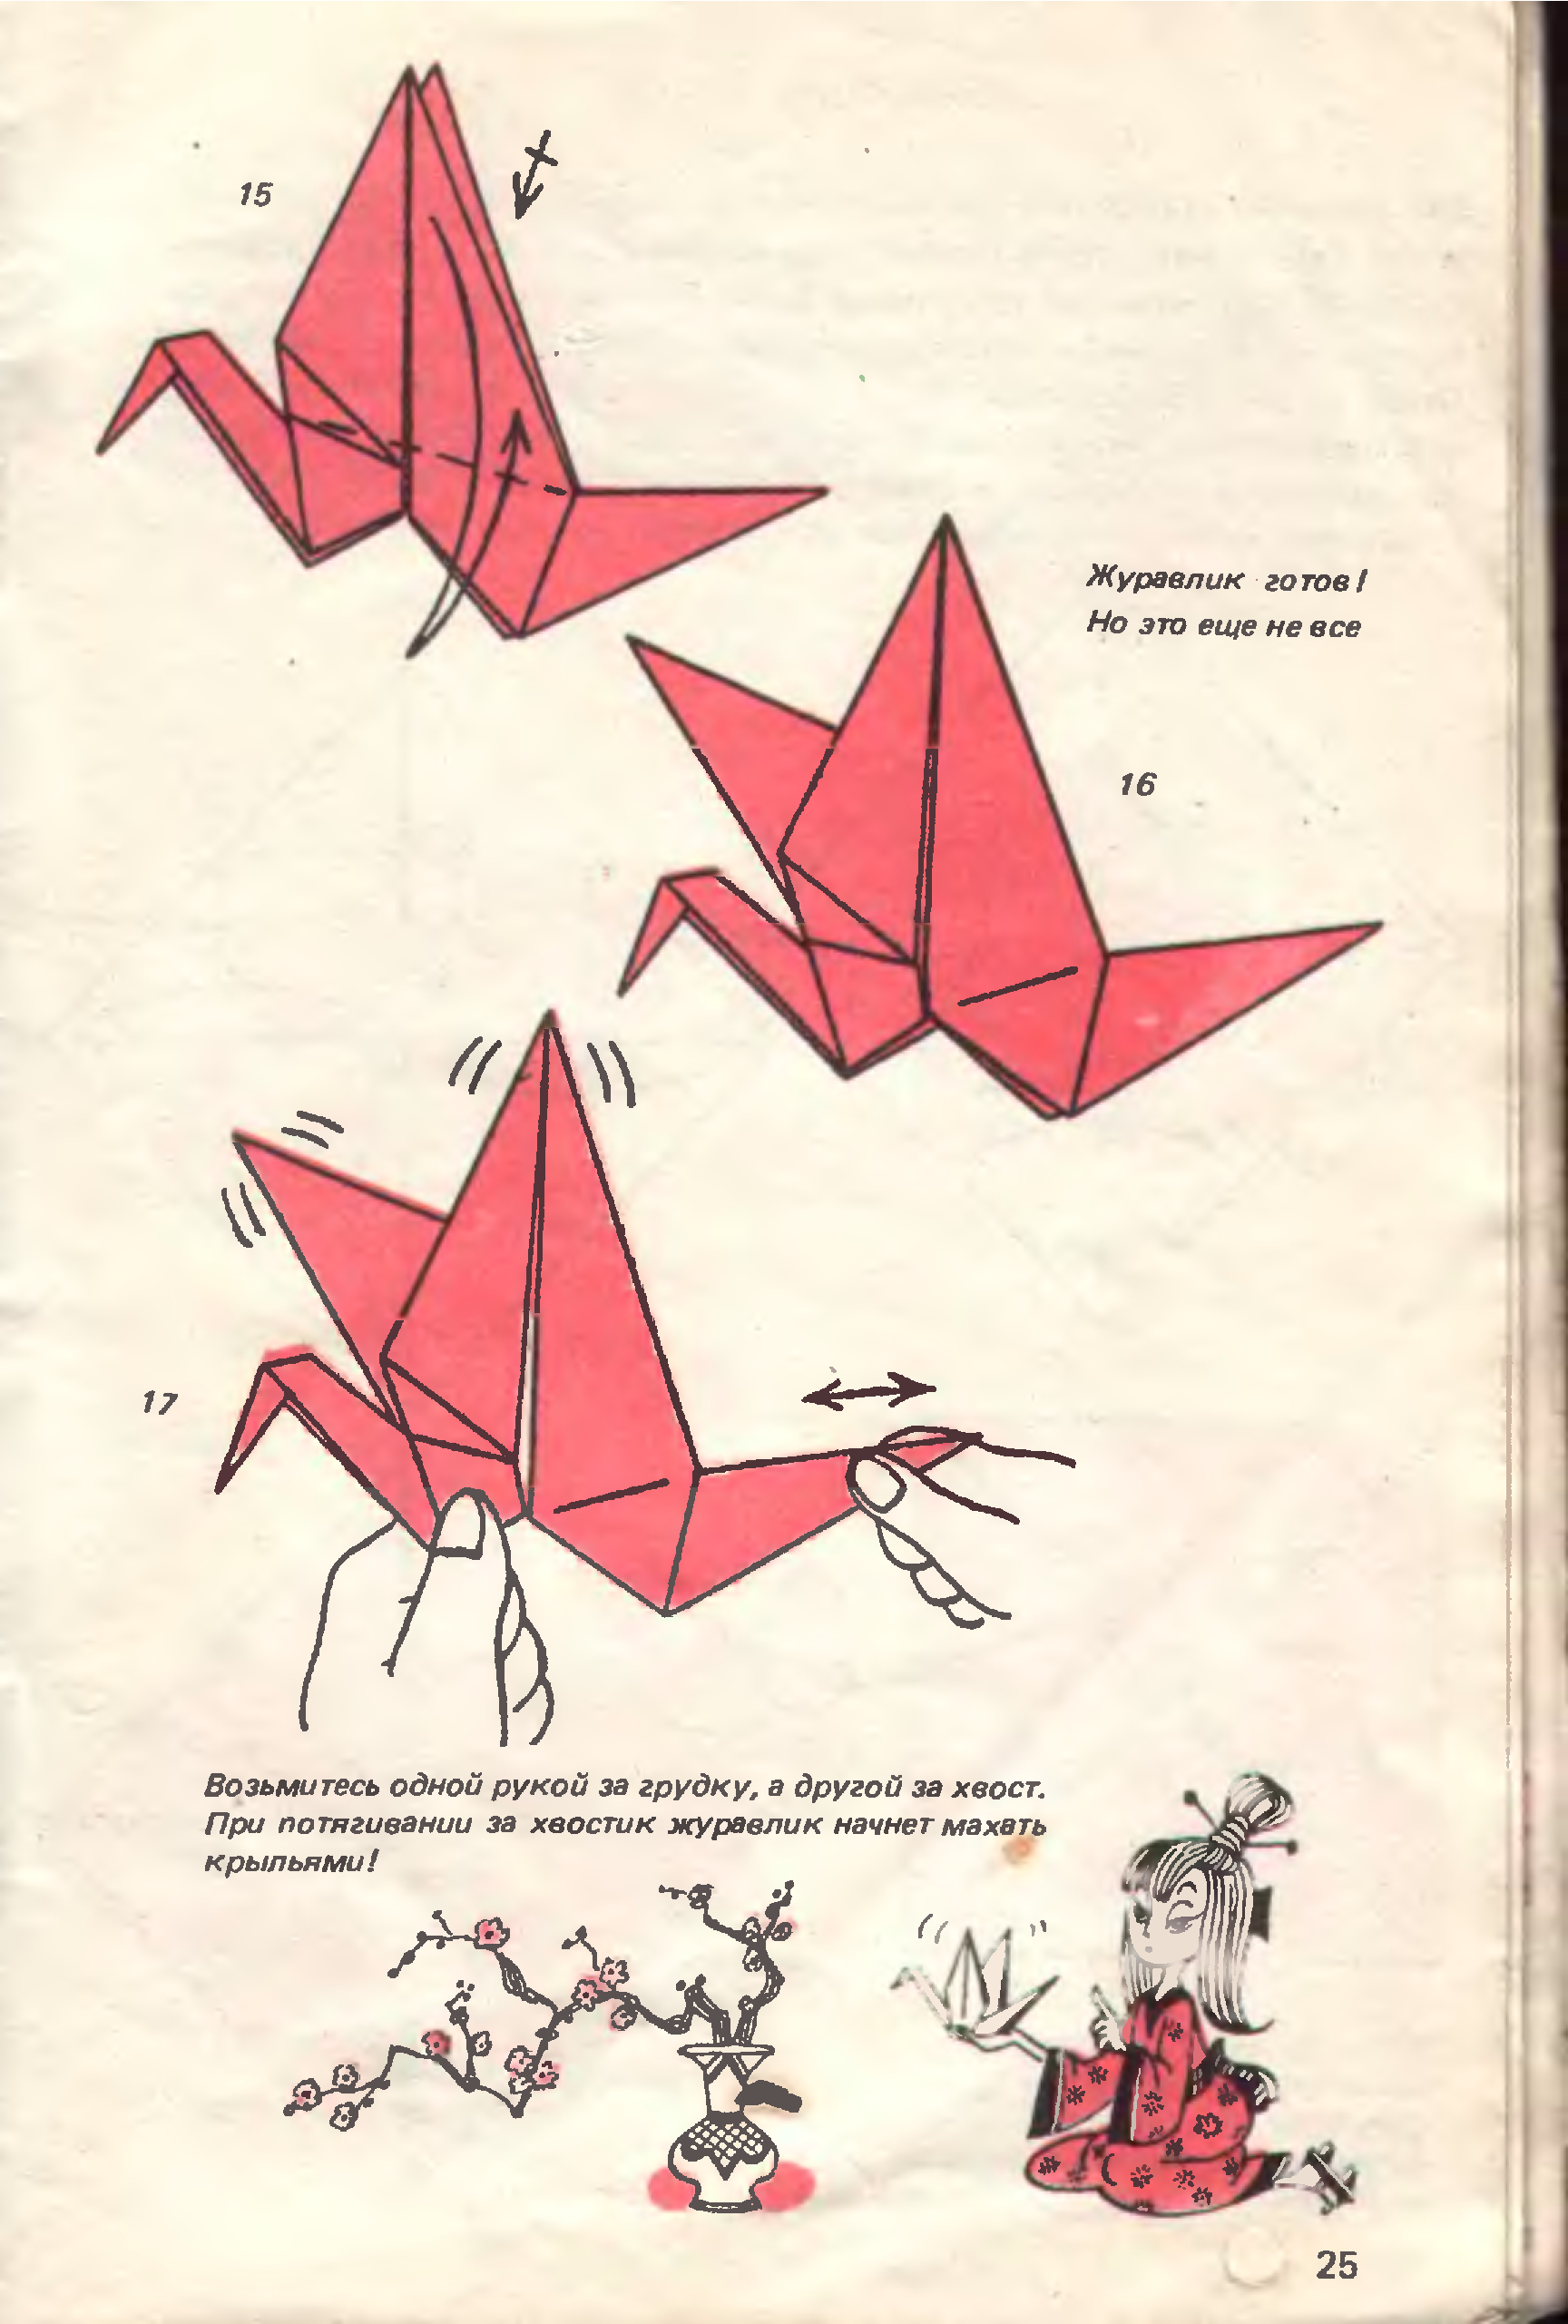 Сделать журавлика оригами пошаговая инструкция для начинающих. Схема сбора журавлика. Бумажный Журавлик пошагово. Японский Журавлик оригами схема. Схема оригами Журавлик из бумаги для начинающих пошаговая.